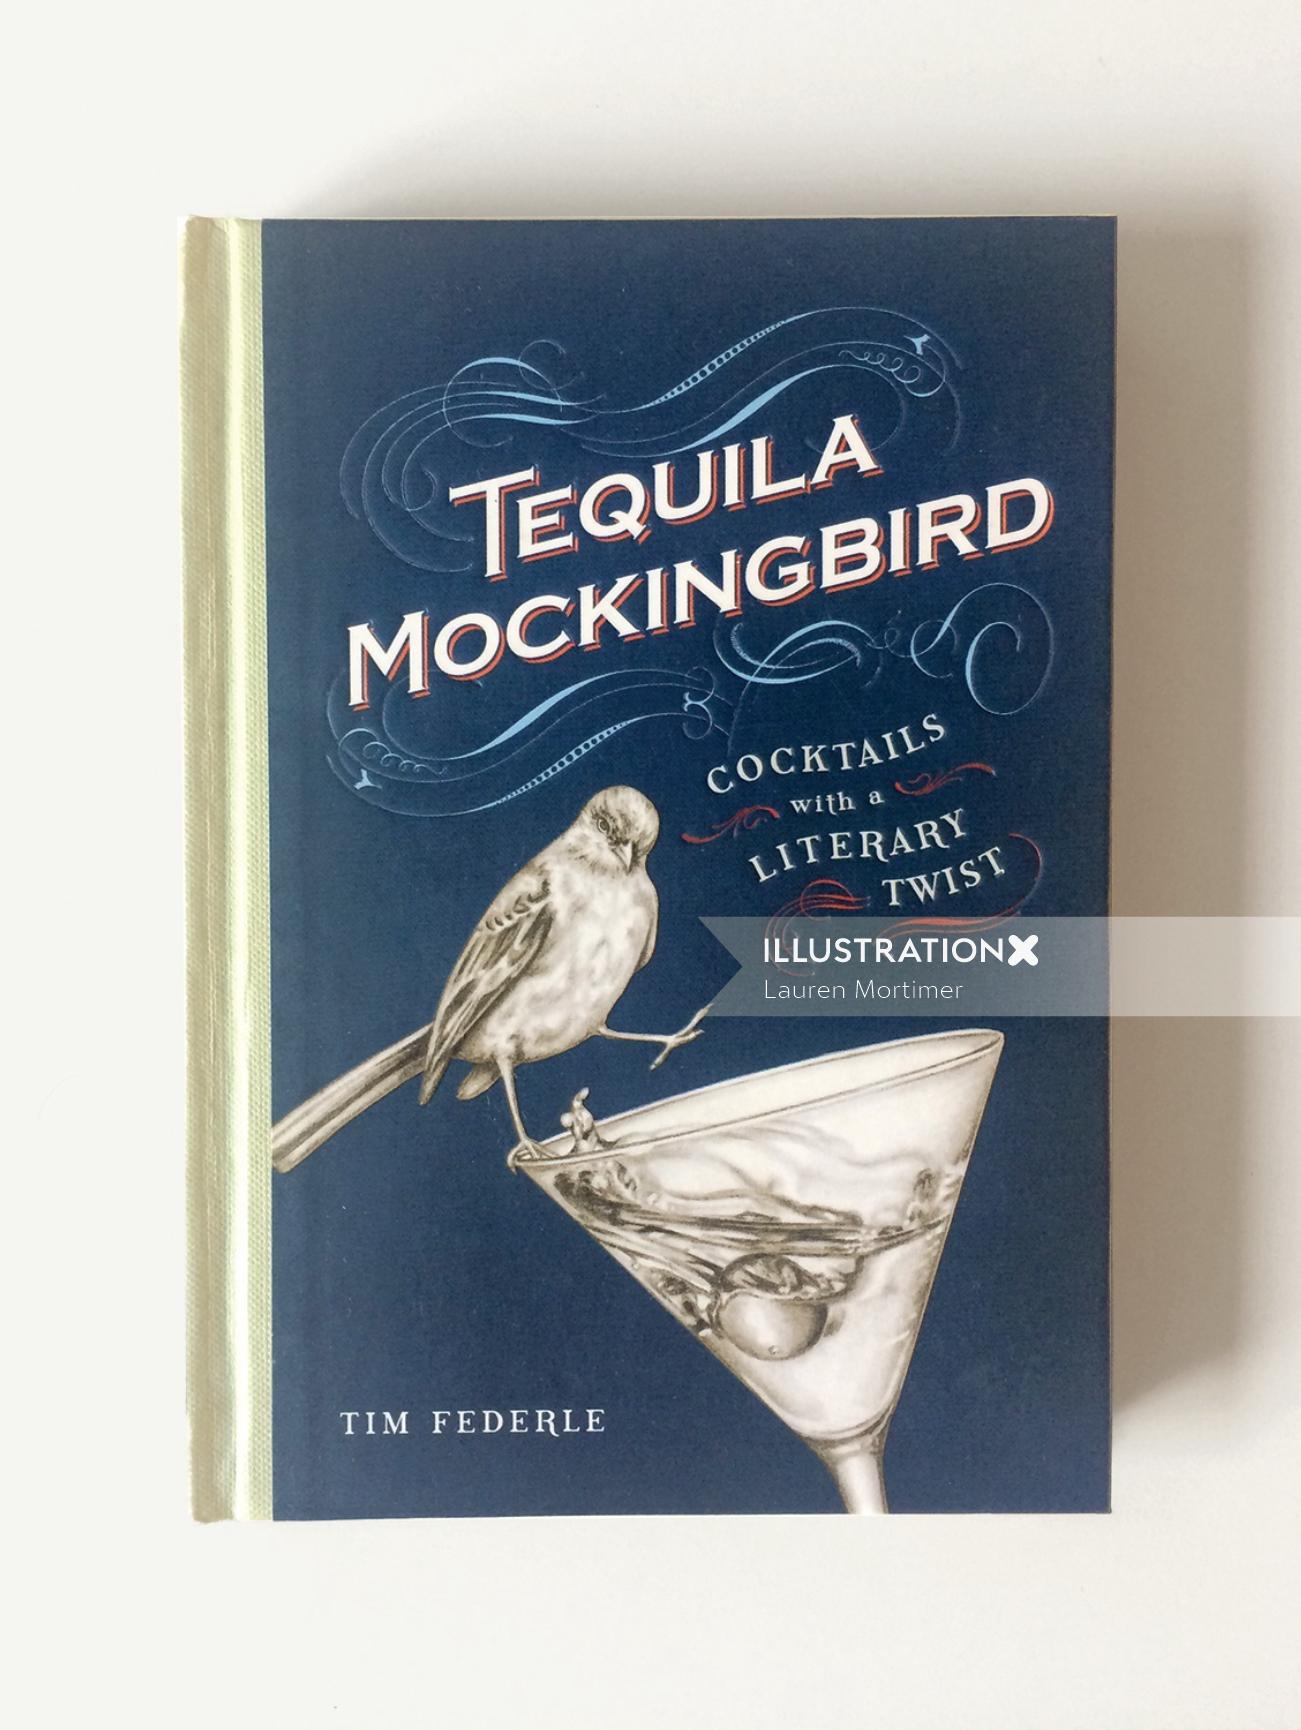 Illustration de couverture de livre pour Tequila Mockingbird